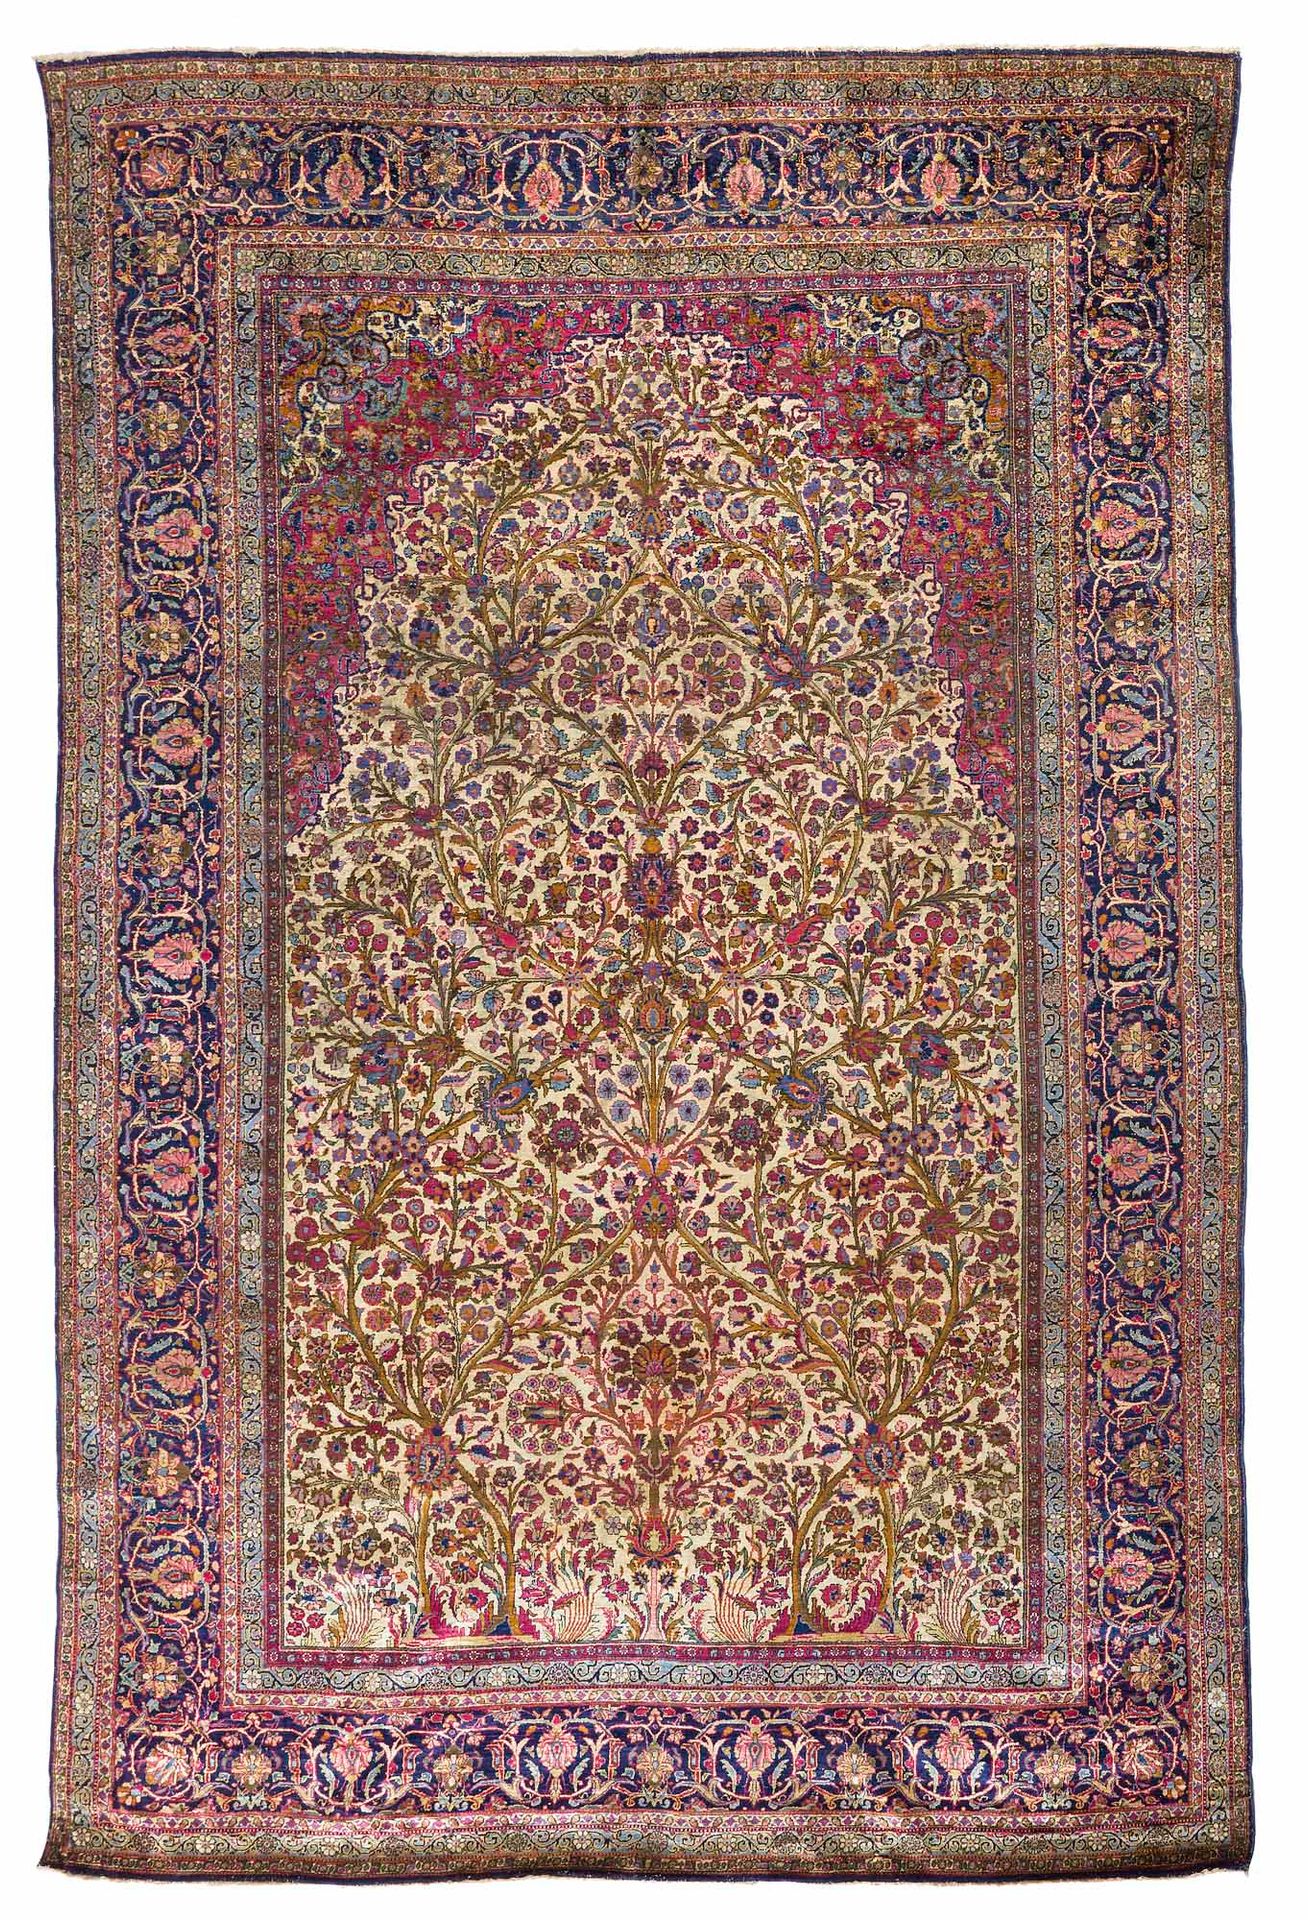 Null Tappeto KACHAN in seta (Persia), fine XIX secolo

Dimensioni: 305 x 210 cm.&hellip;